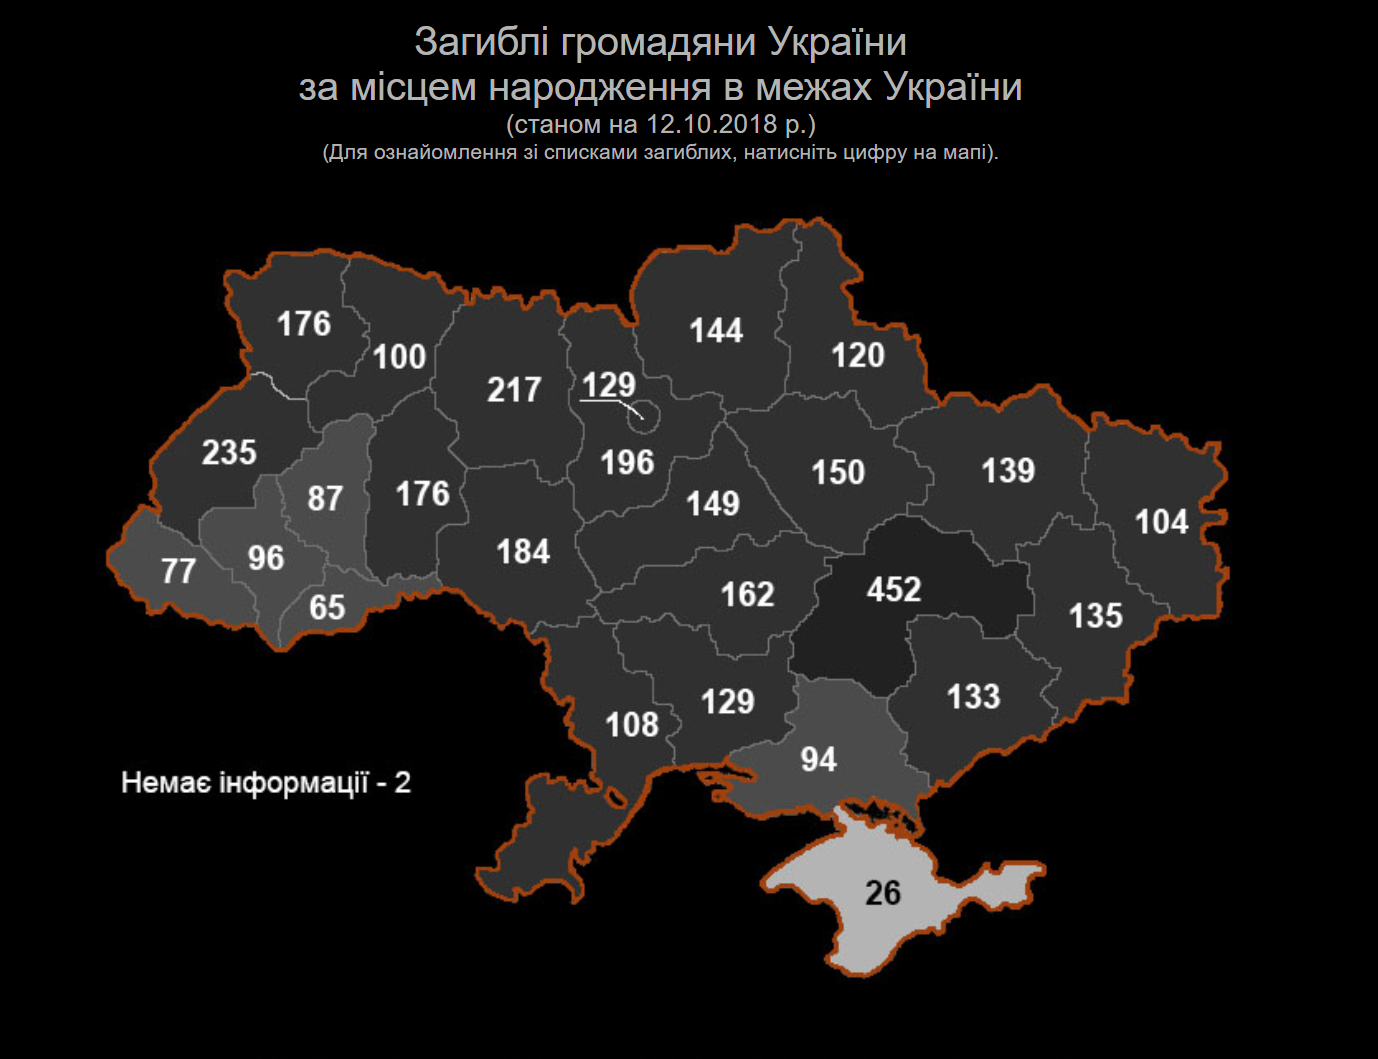 Потери украины на сегодня список. Потери Украины по областям. Карта Украины. Потери в АТО по областям. Число погибших в АТО по областям Украины.